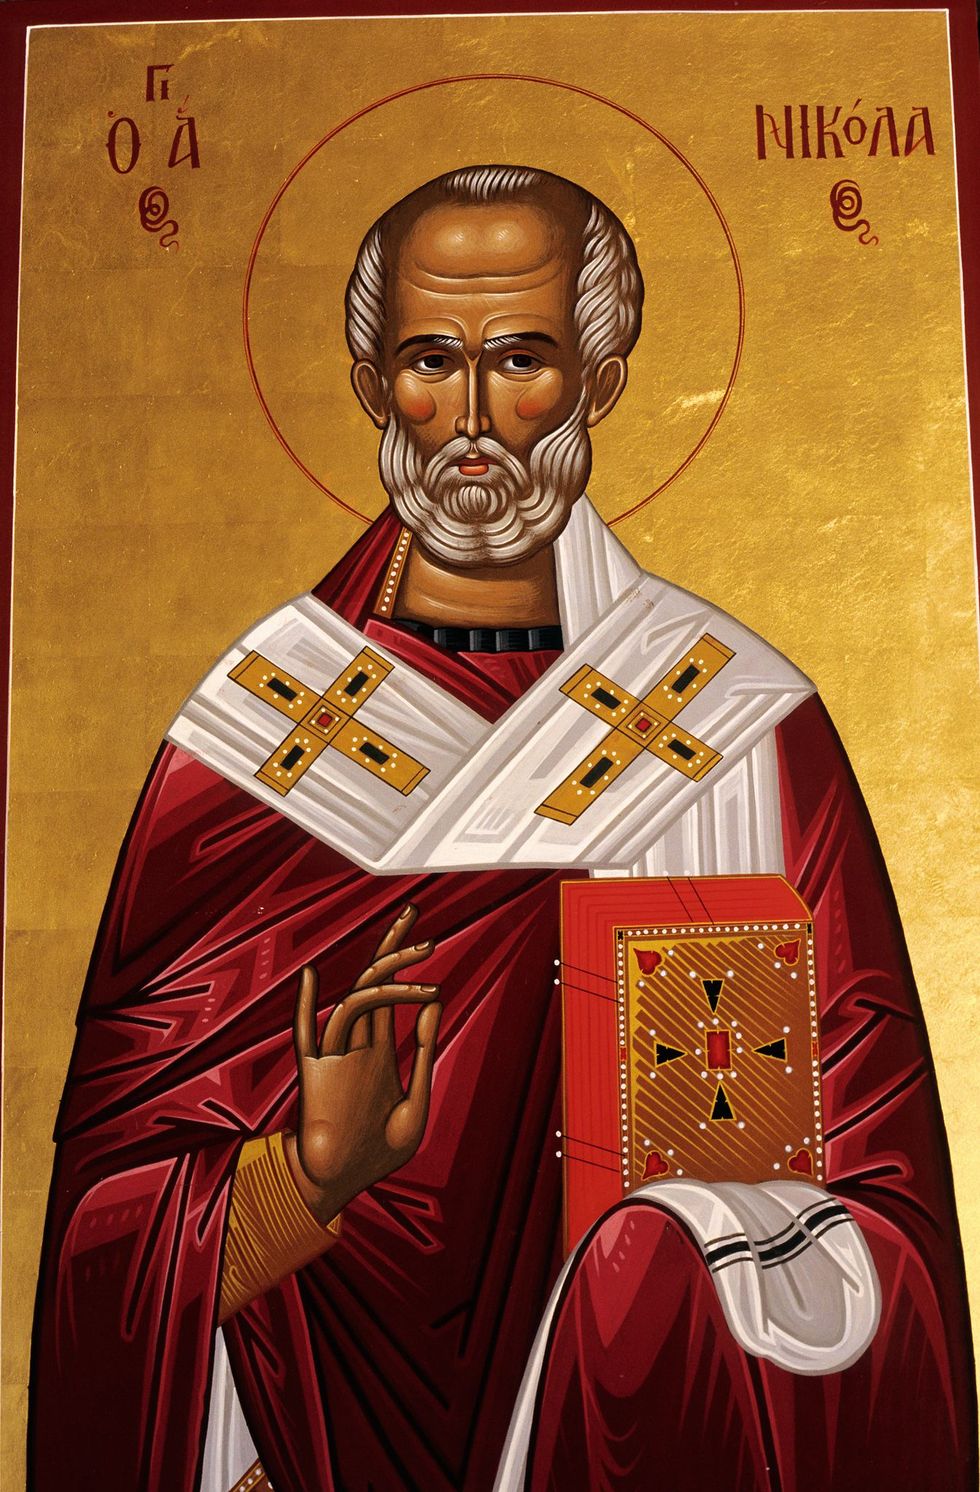 Een religieuze representatie van St Nicholas